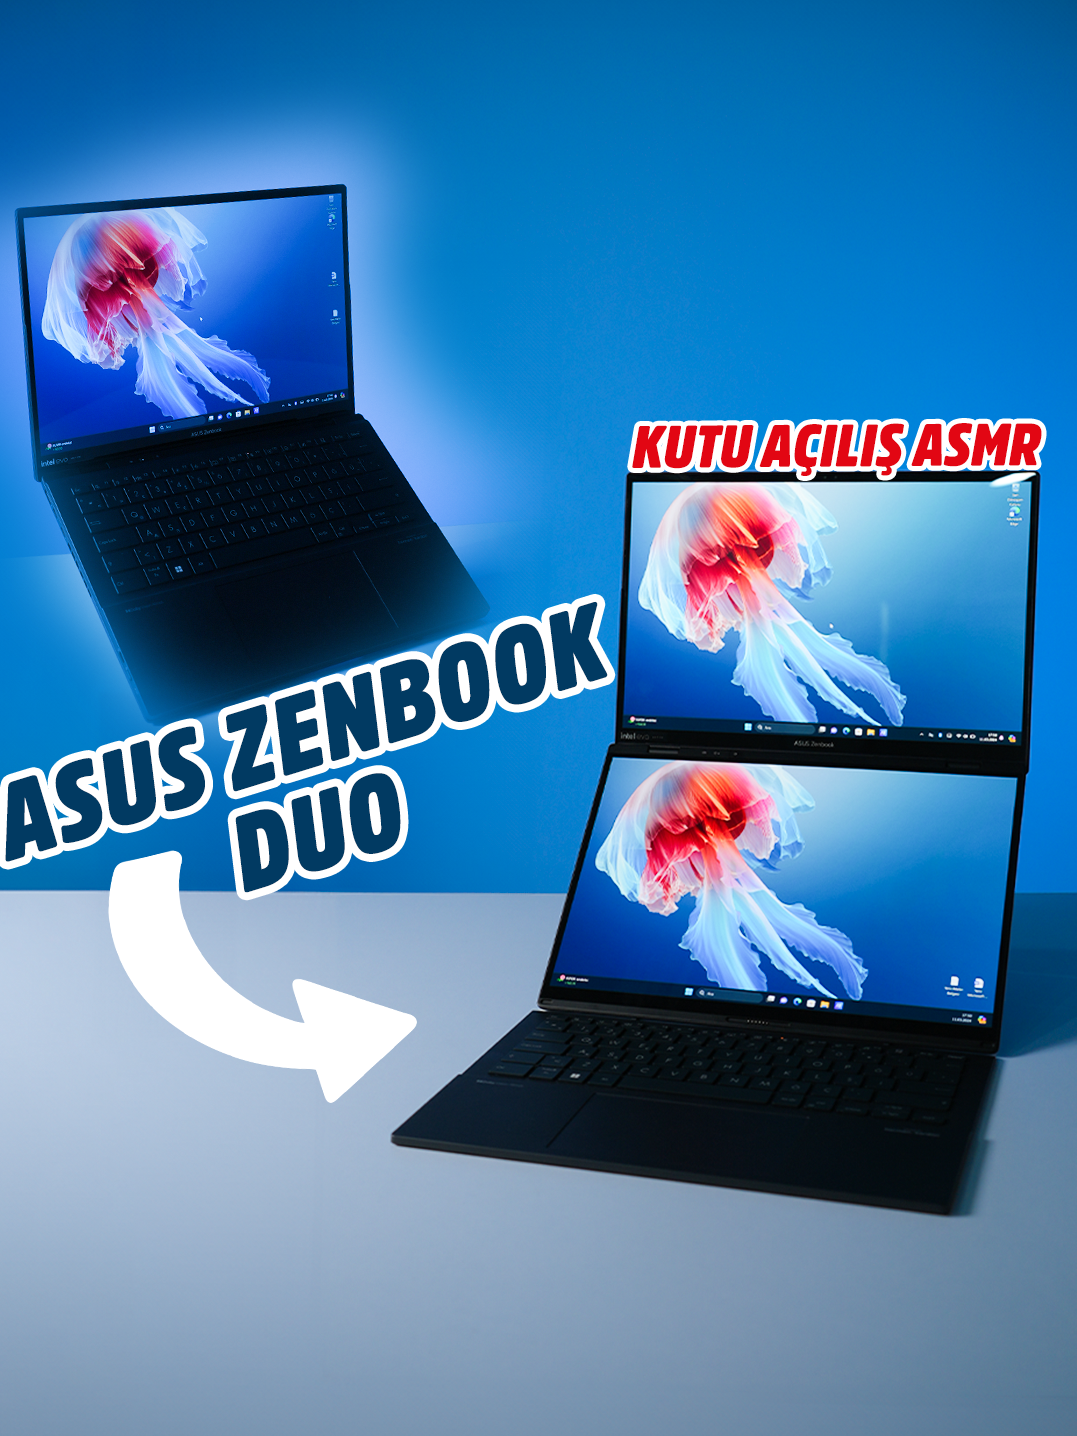 ASUS Zenbook Duo… İki tam boyutlu OLED dokunmatik ekrana, çıkarılabilir tam boyutlu klavyeye ve dahili destek ayağına sahip devrim niteliğinde bir çift ekranlı dizüstü bilgisayar… Çift 14 inç 3K OLED 120 Hz ekran ile çalışma alanınızı anında 19,8 inçe kadar genişletebilirsiniz. Yapay zekâ destekli Intel Core Ultra 9 işlemci, 32 GB LPDDR5x bellek ve 2 TB SSD ile üstün performans sağlar.